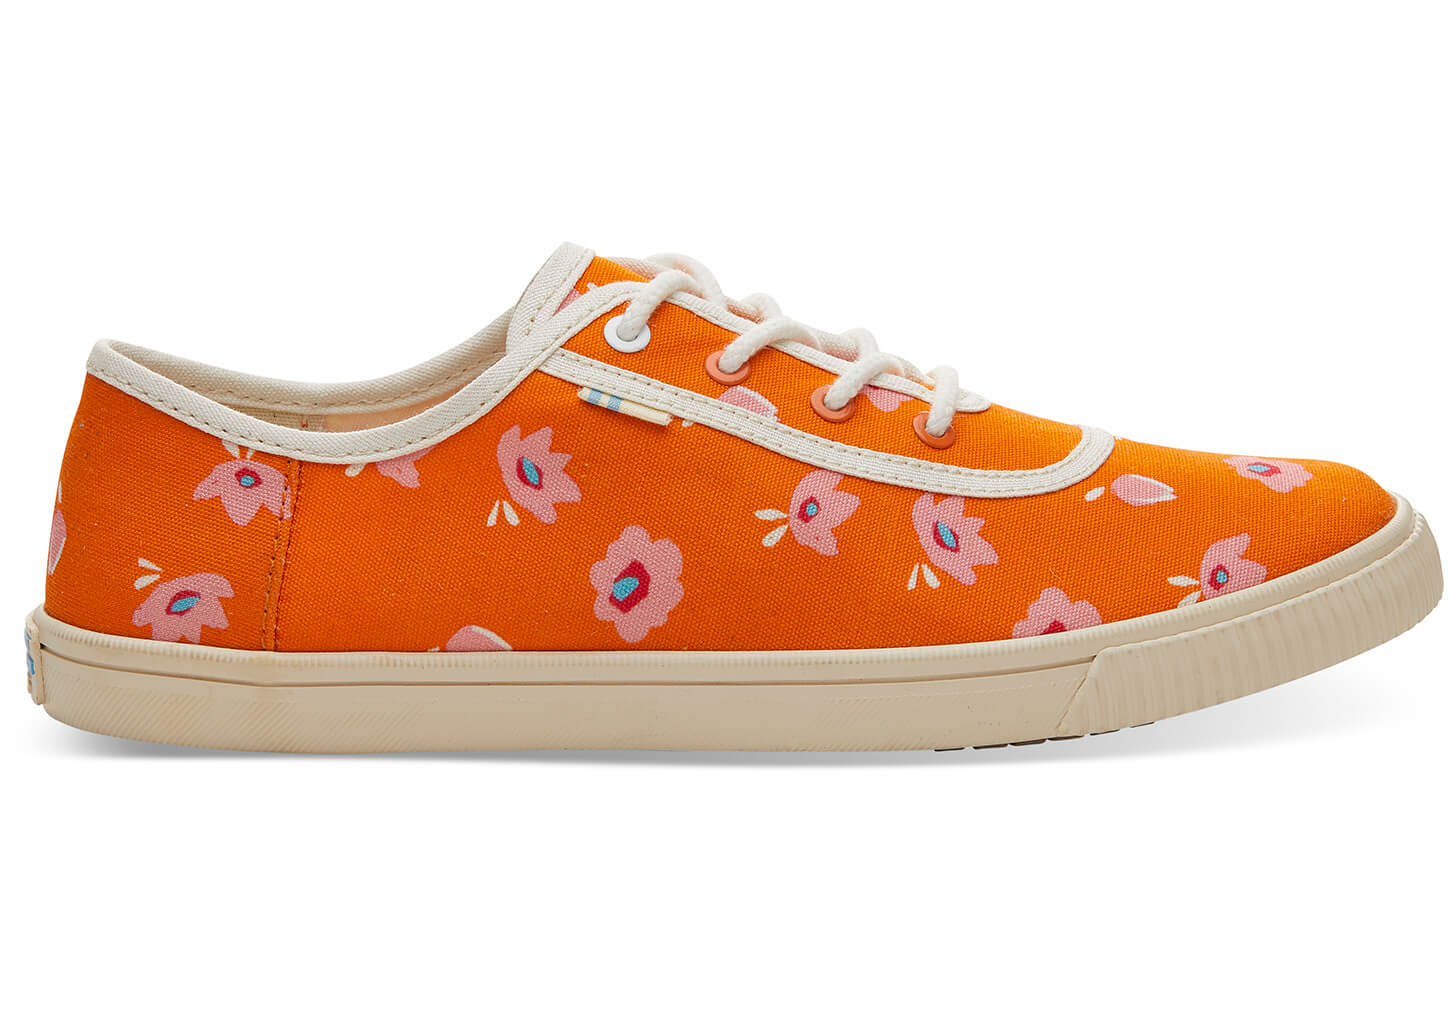 Dámské oranžové tenisky TOMS Flower Print Carmel Sneakers